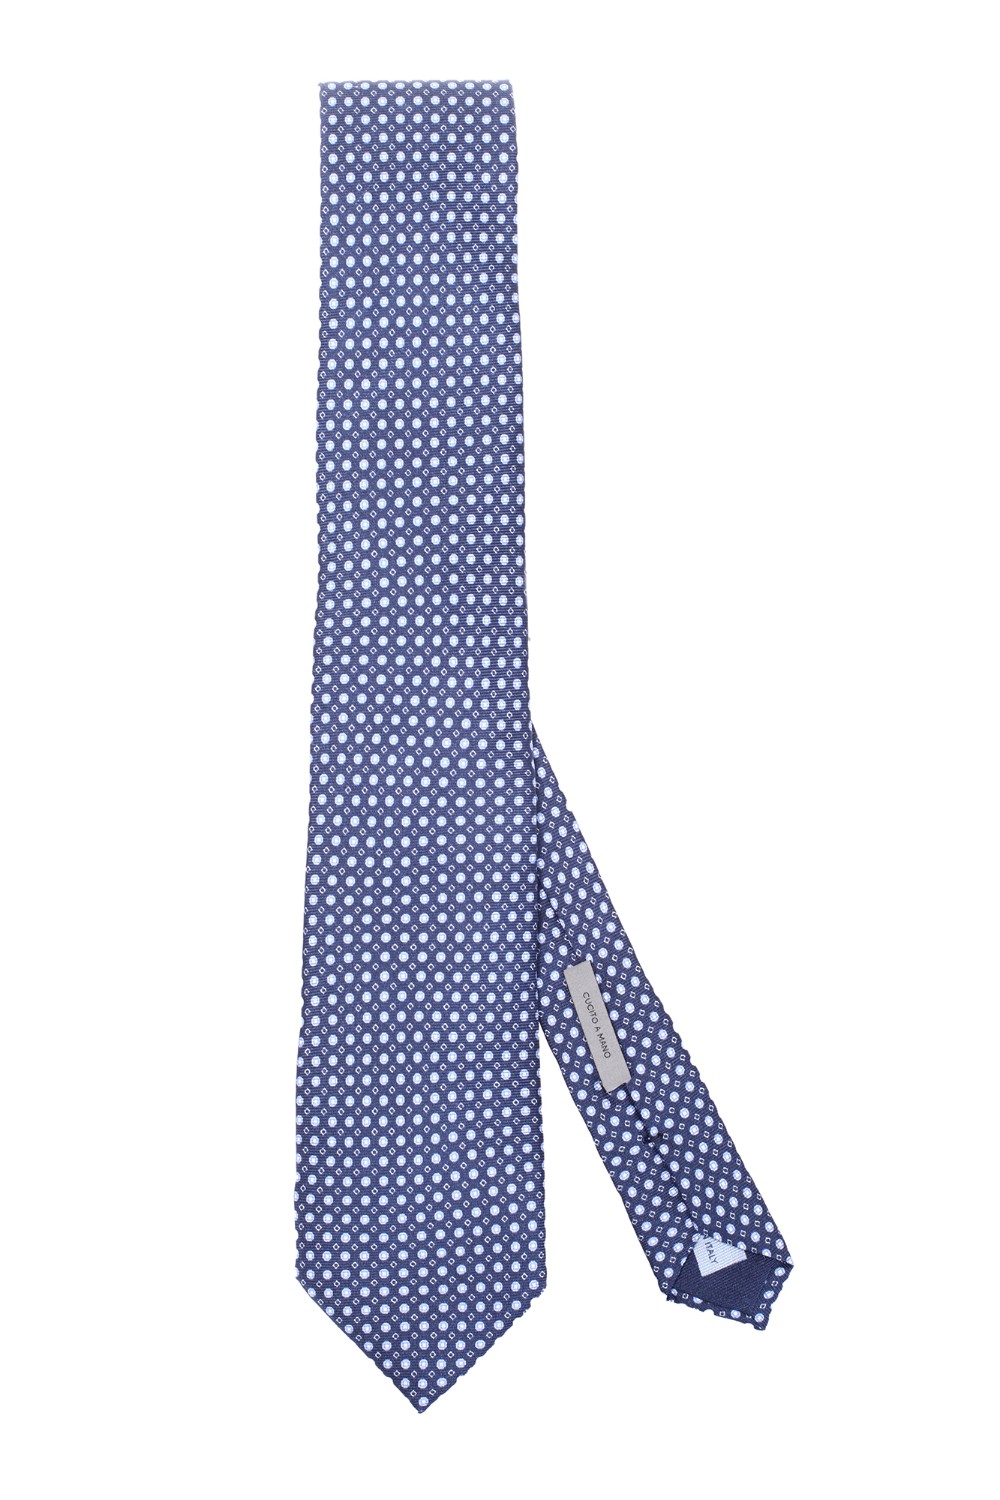 shop CORNELIANI  Cravatta: Corneliani cravatta in seta.
Cucito a mano.
Composizione: 100% Seta.
Fabbricato in Italia.. 89U390 2120319-002 number 7813890